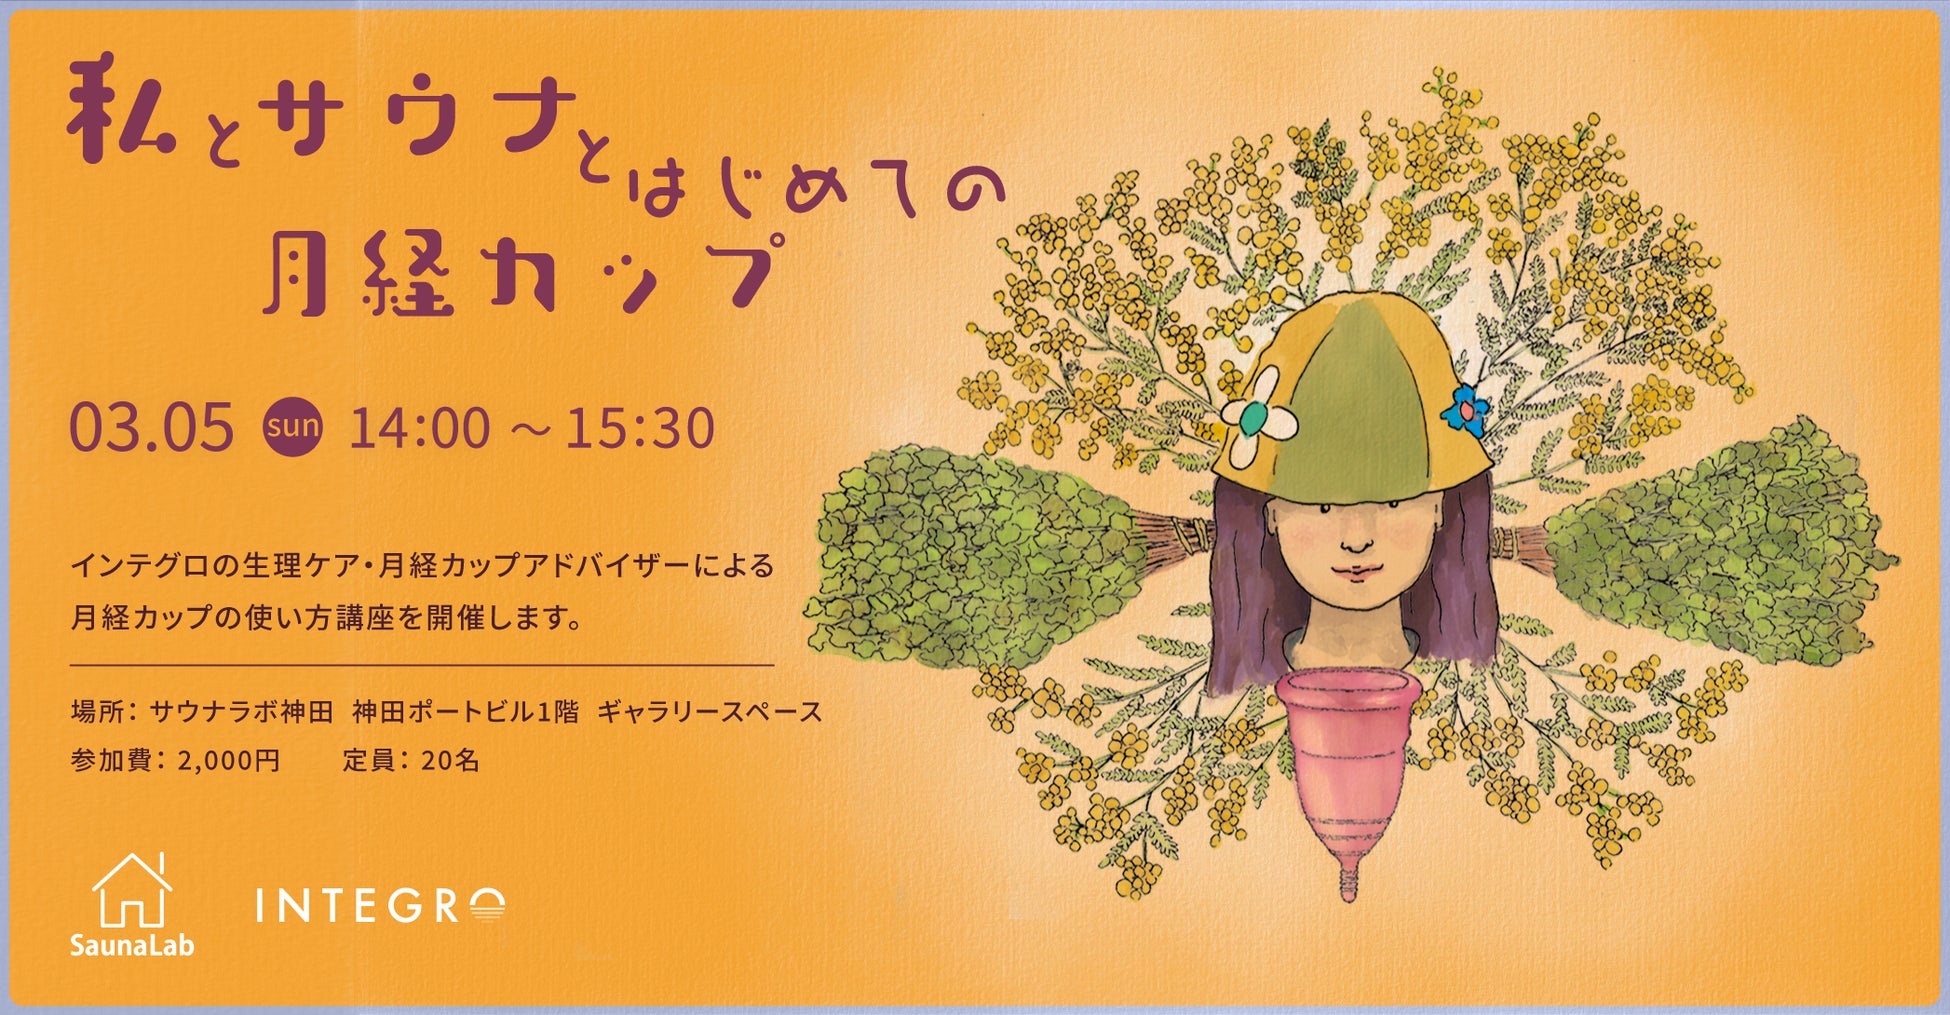 月経カップのインテグロ × サウナラボ神田 が、国際女性デーに合わせたコラボ企画「#私とサウナと月経カップ」を開催